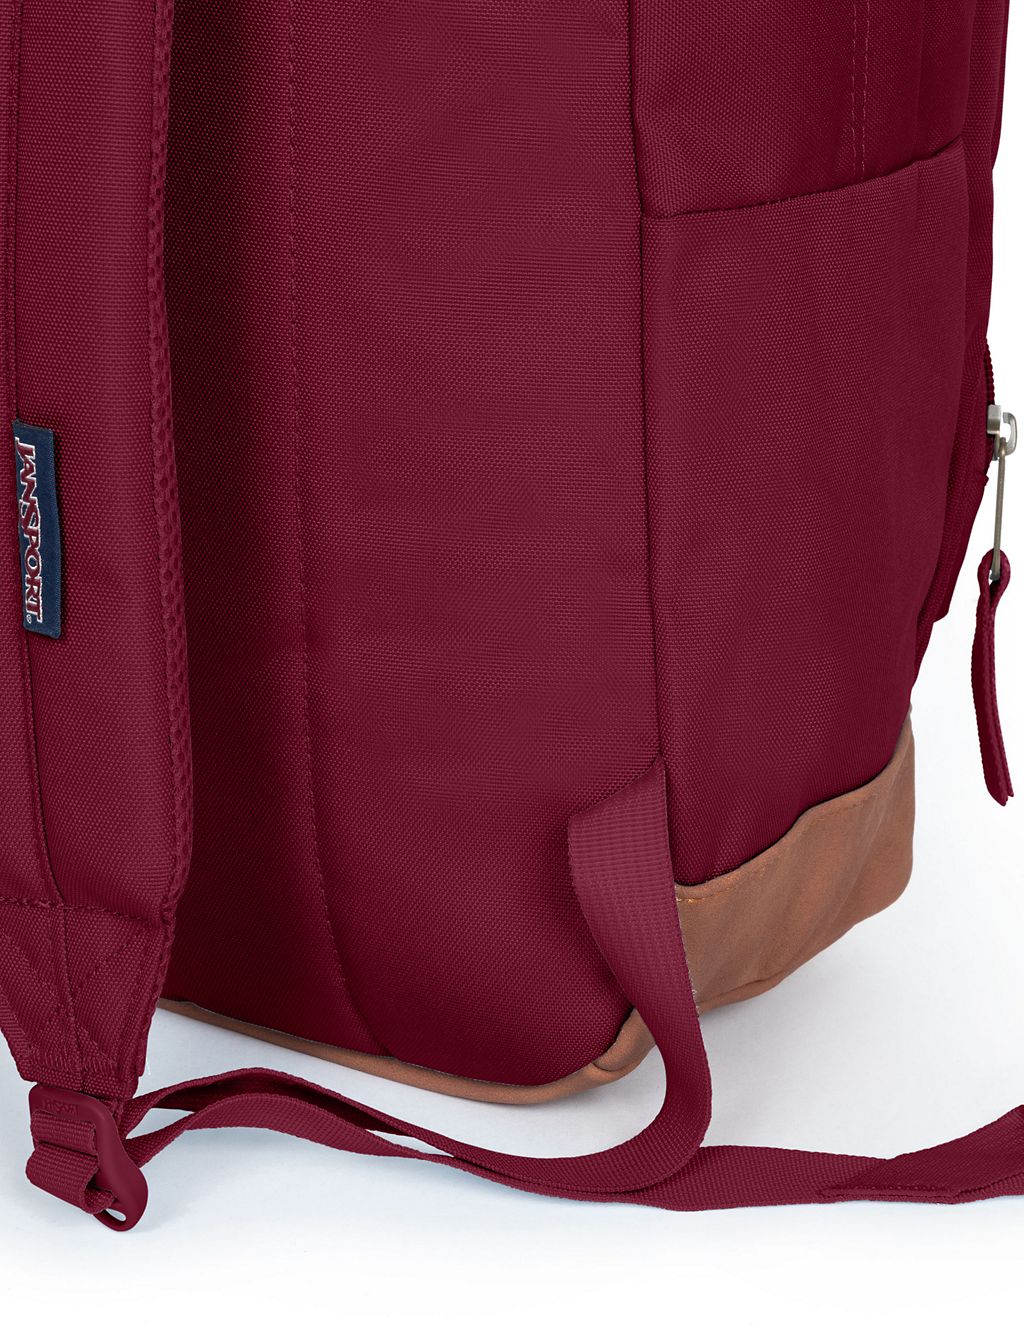 Cortlandt Multi Pocket Backpack 6 of 6